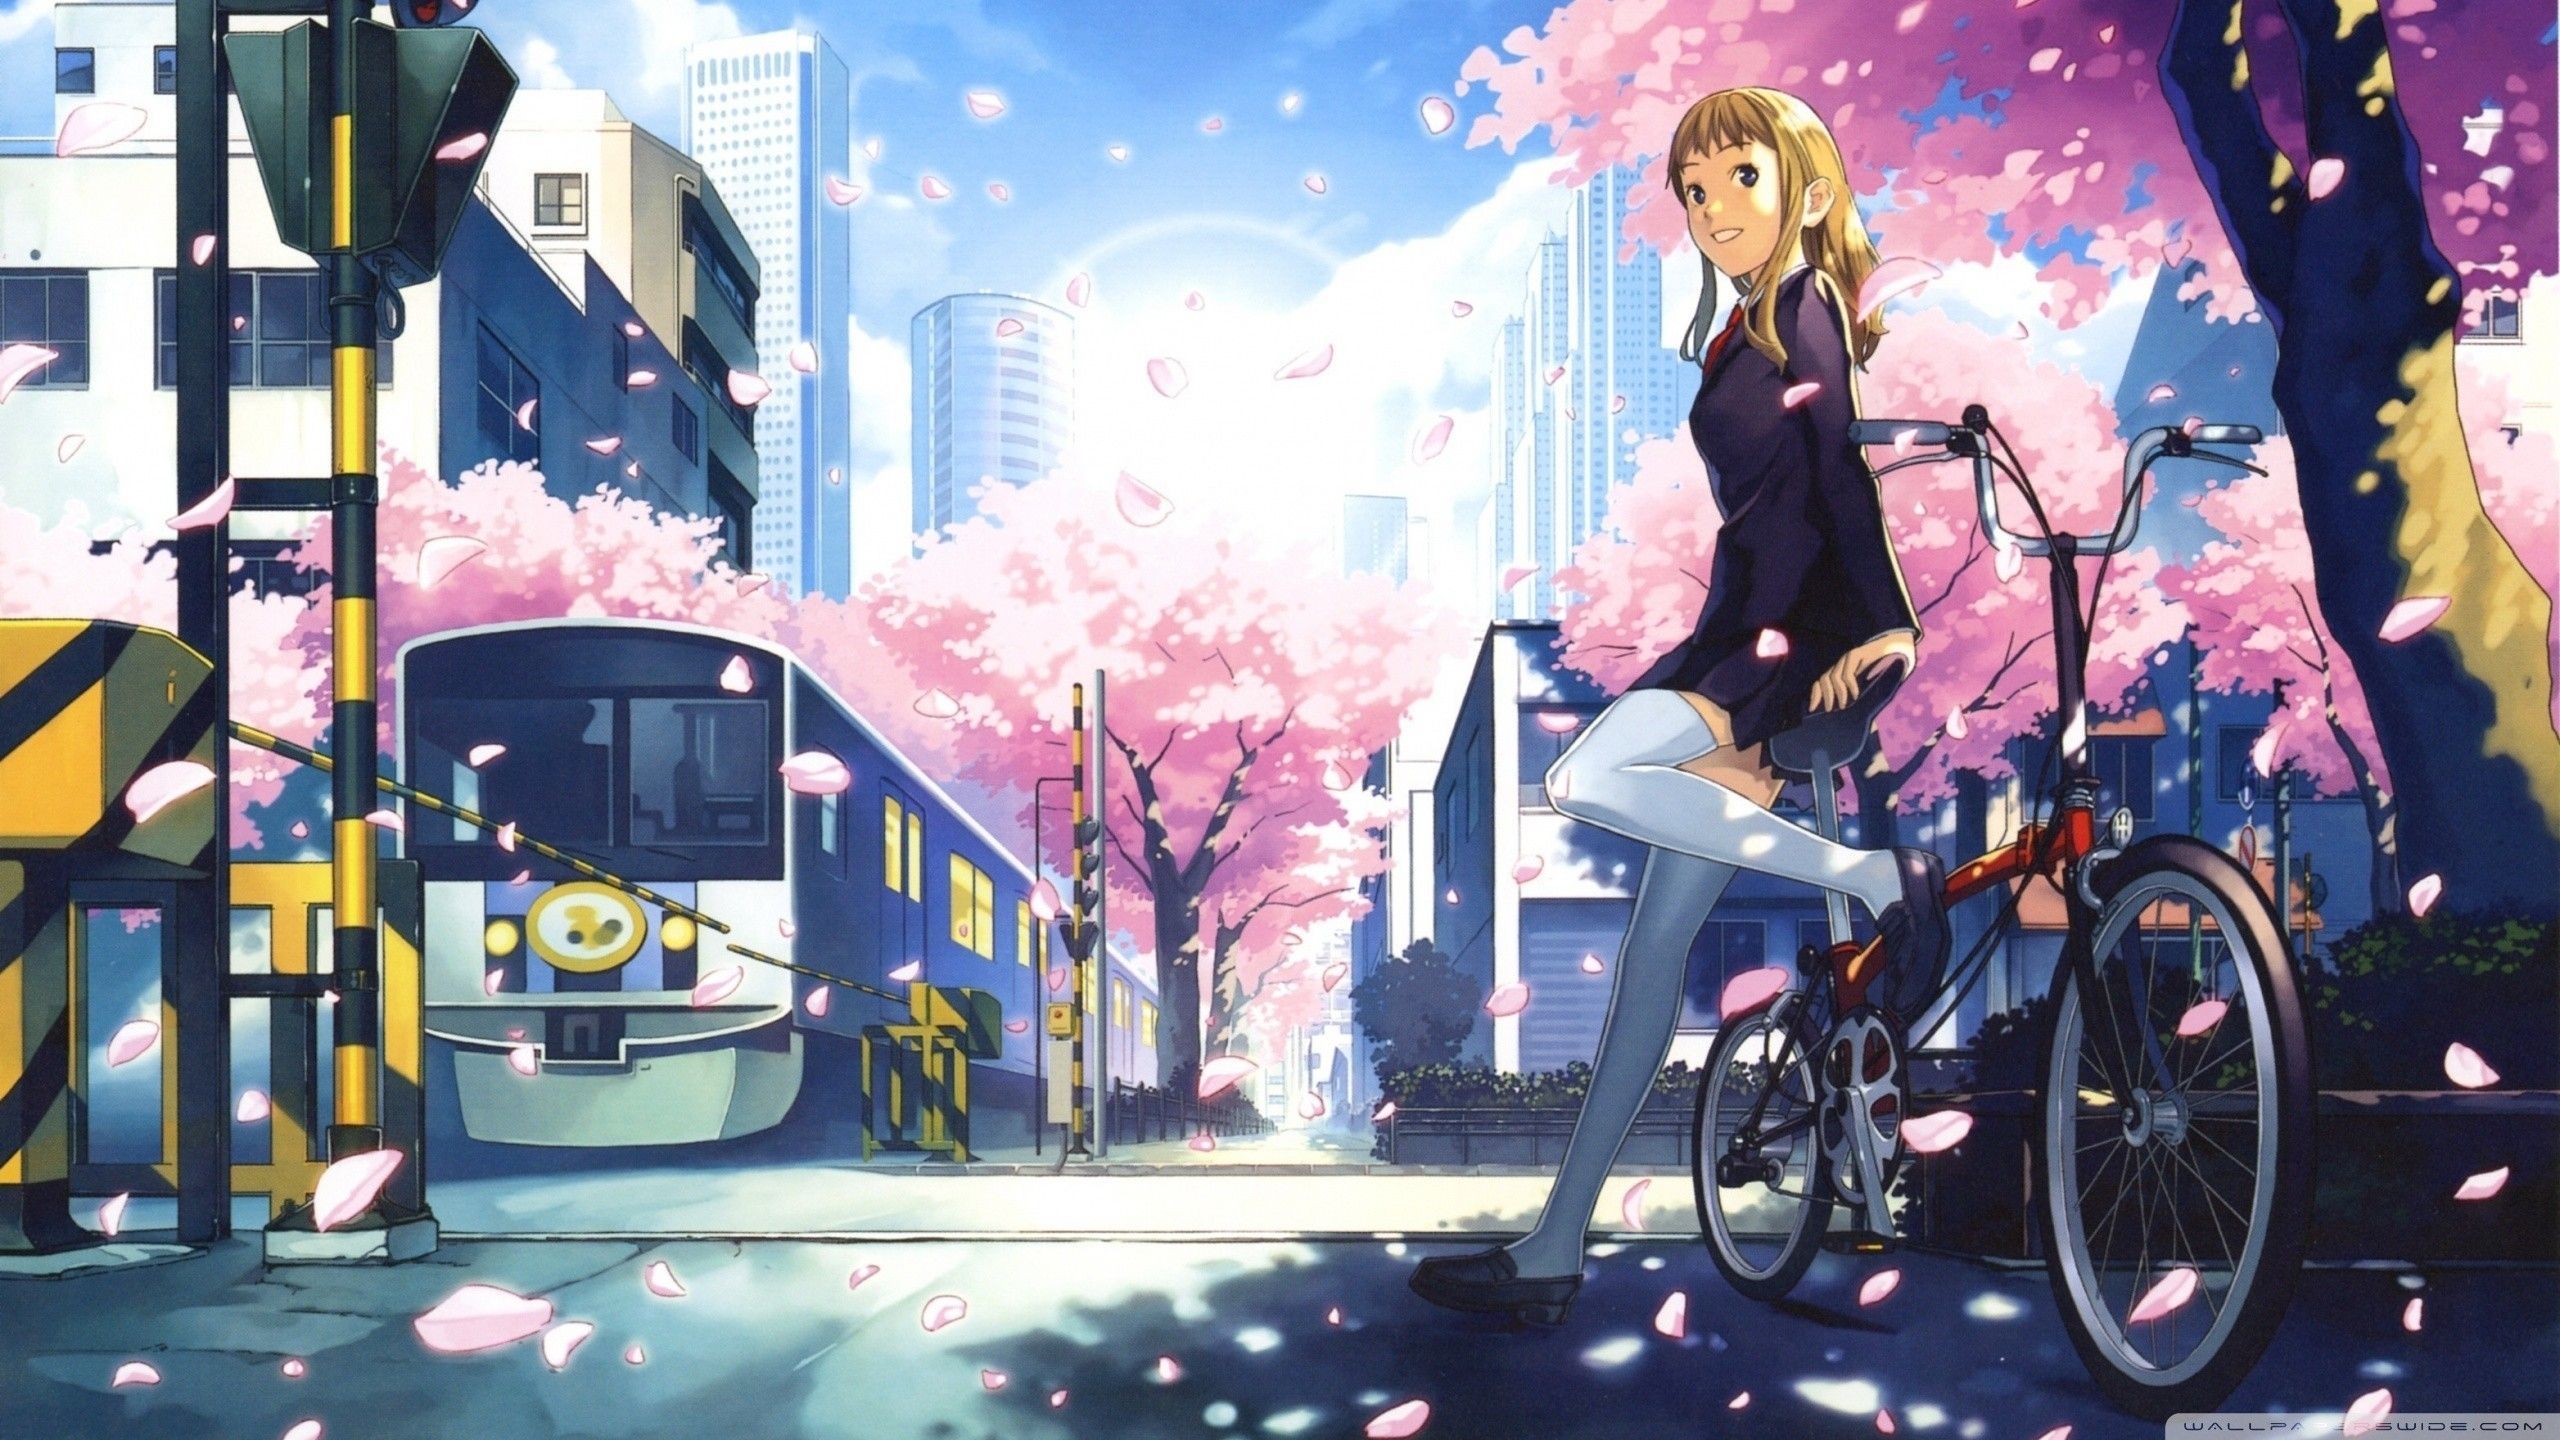 Anime Aesthetic Desktop Wallpaper